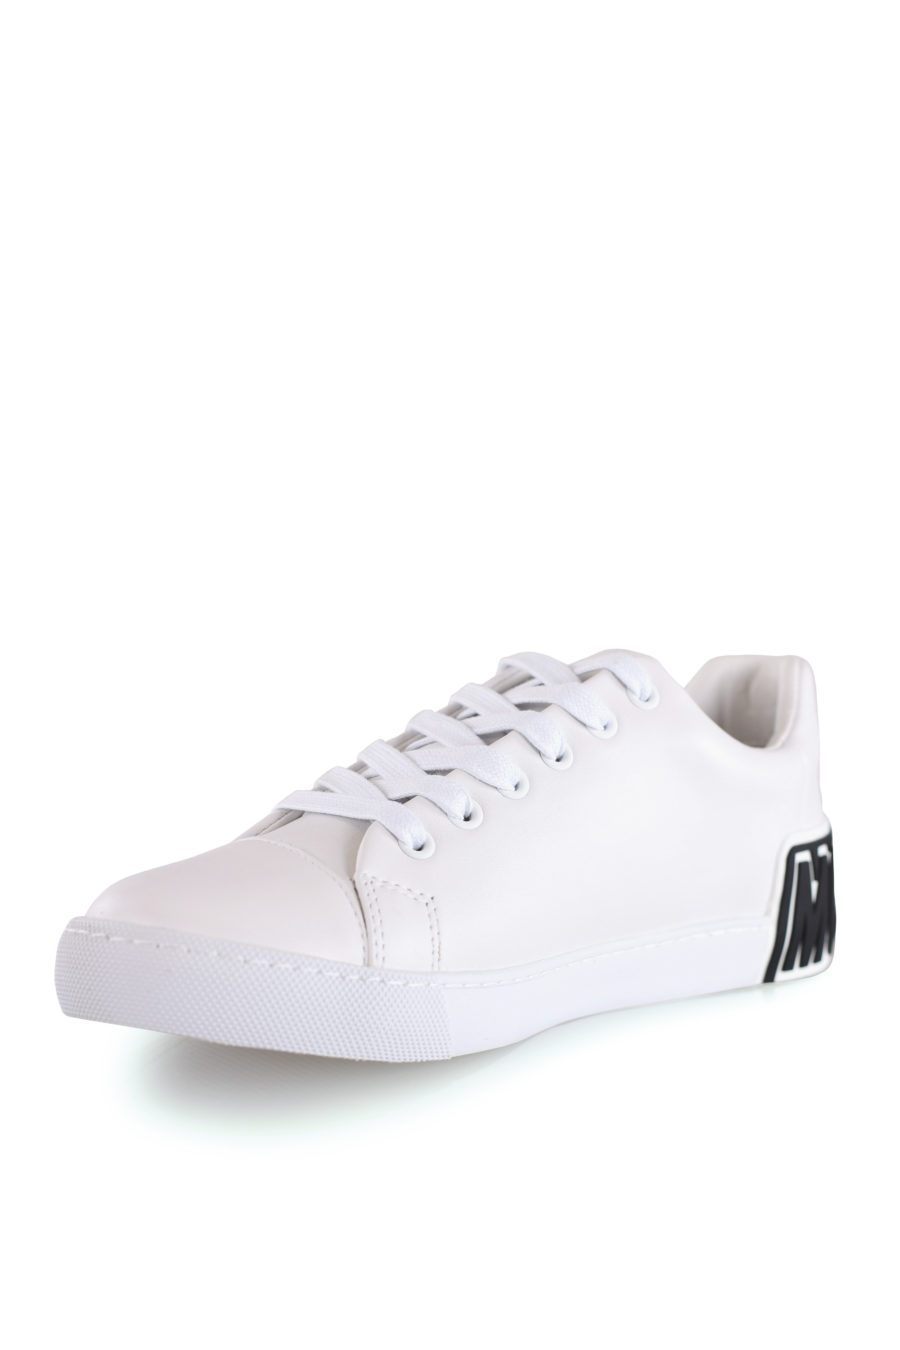 Zapatillas blancas con logo de goma - IMG 8492 copia